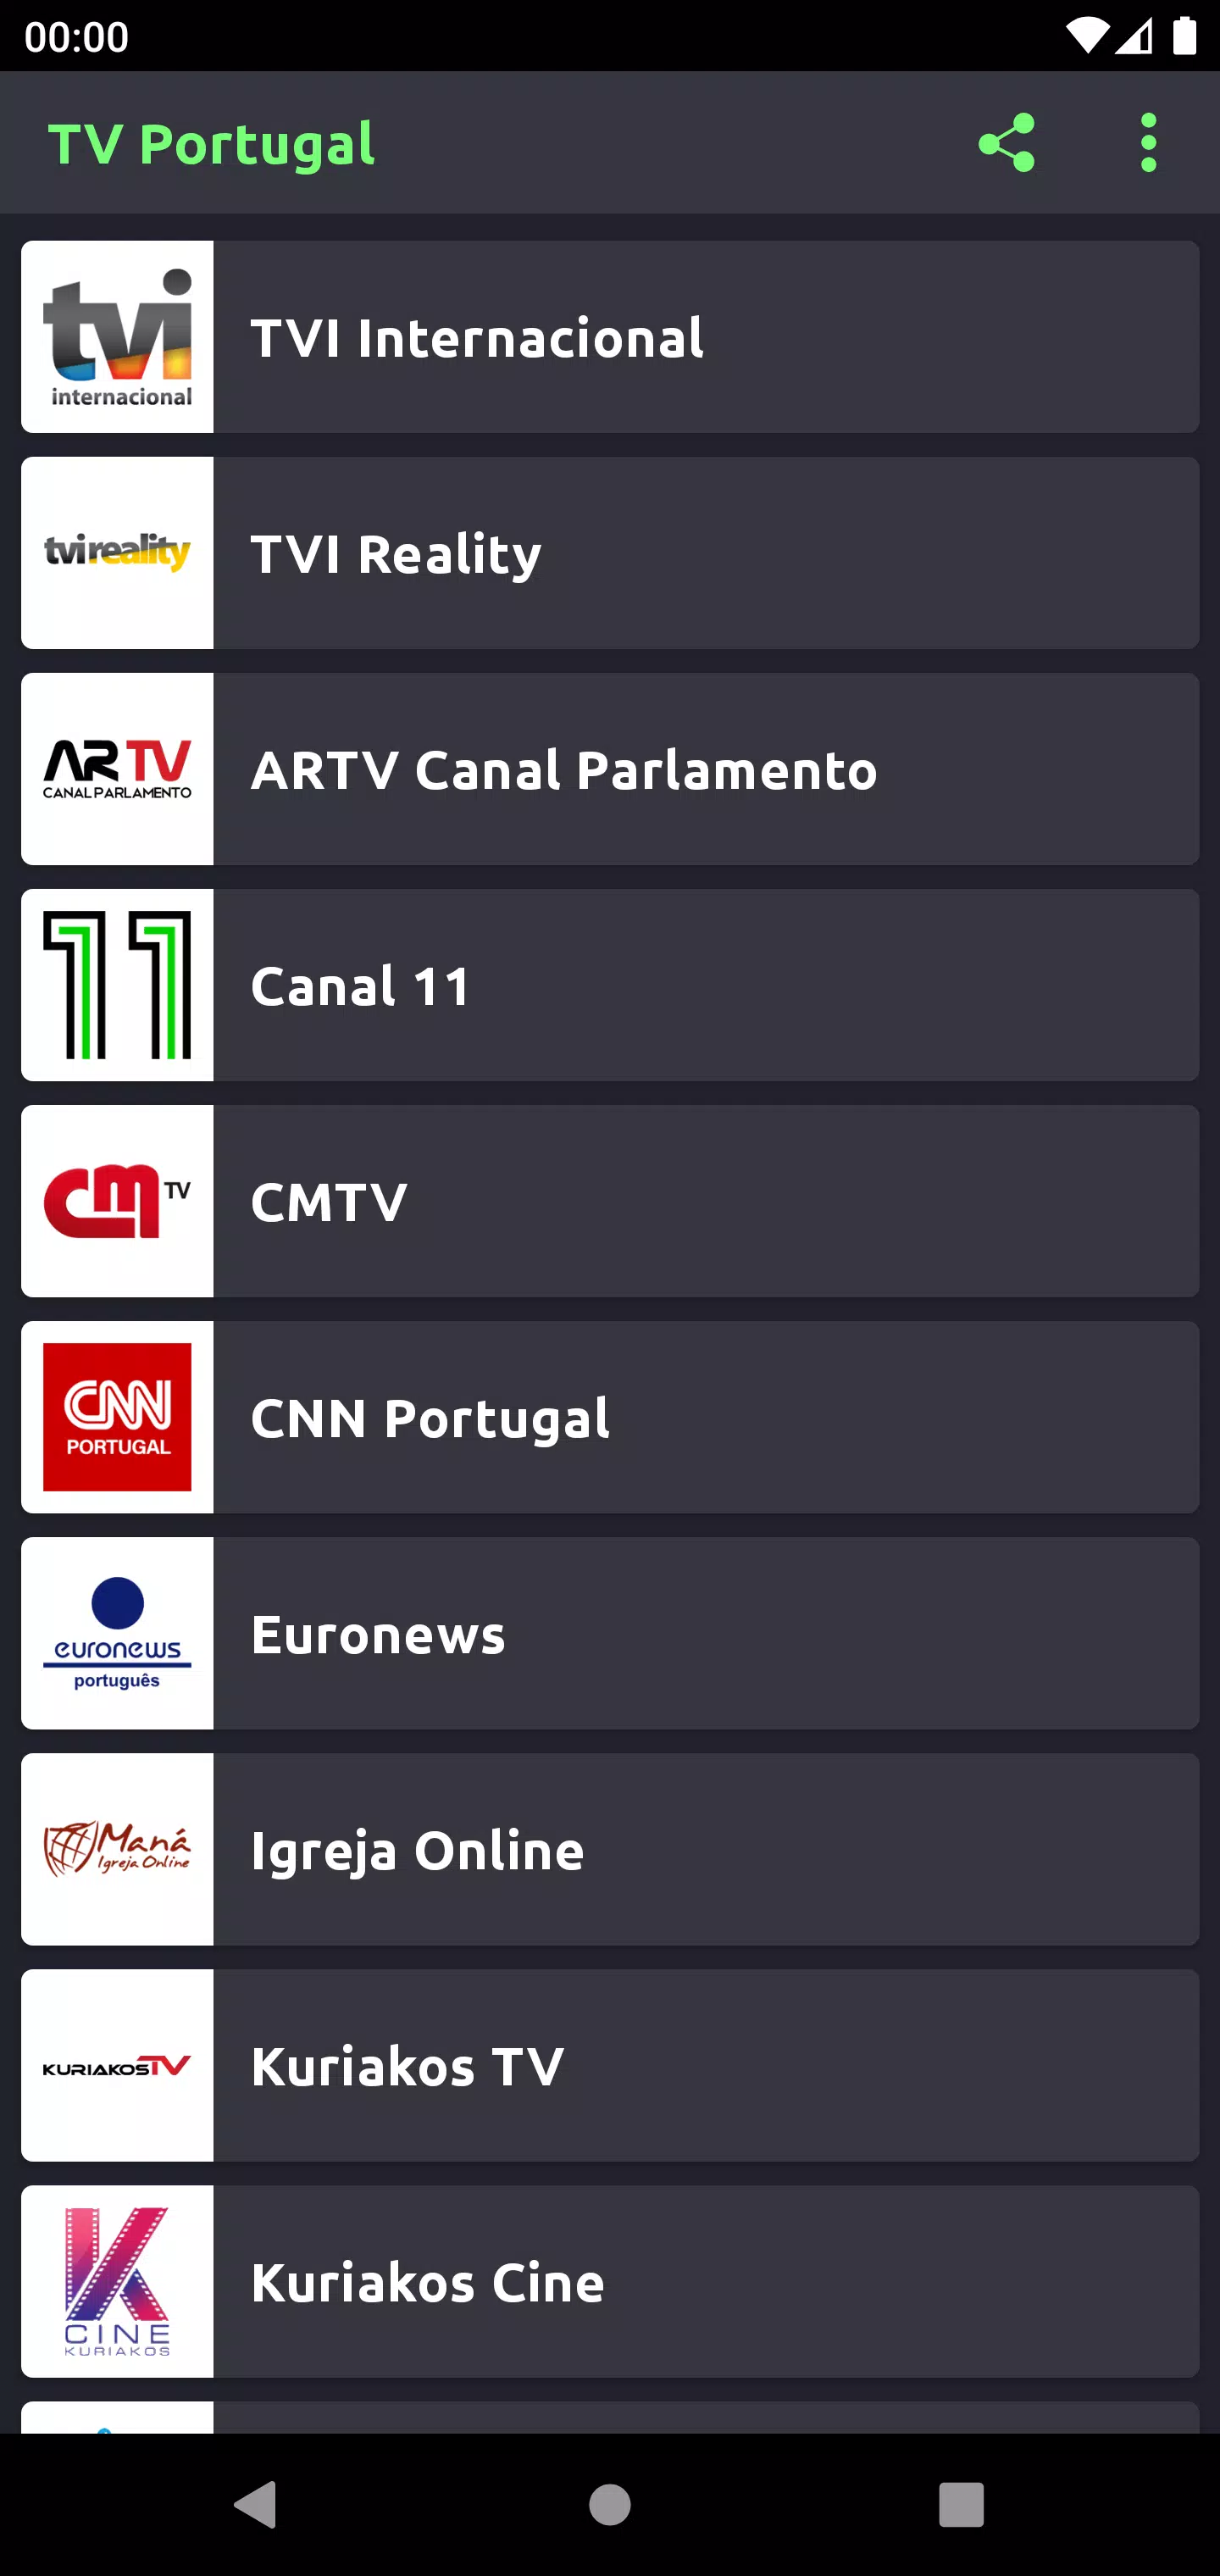 APP TV Desporto Grátis, TV Portugal Android.apk